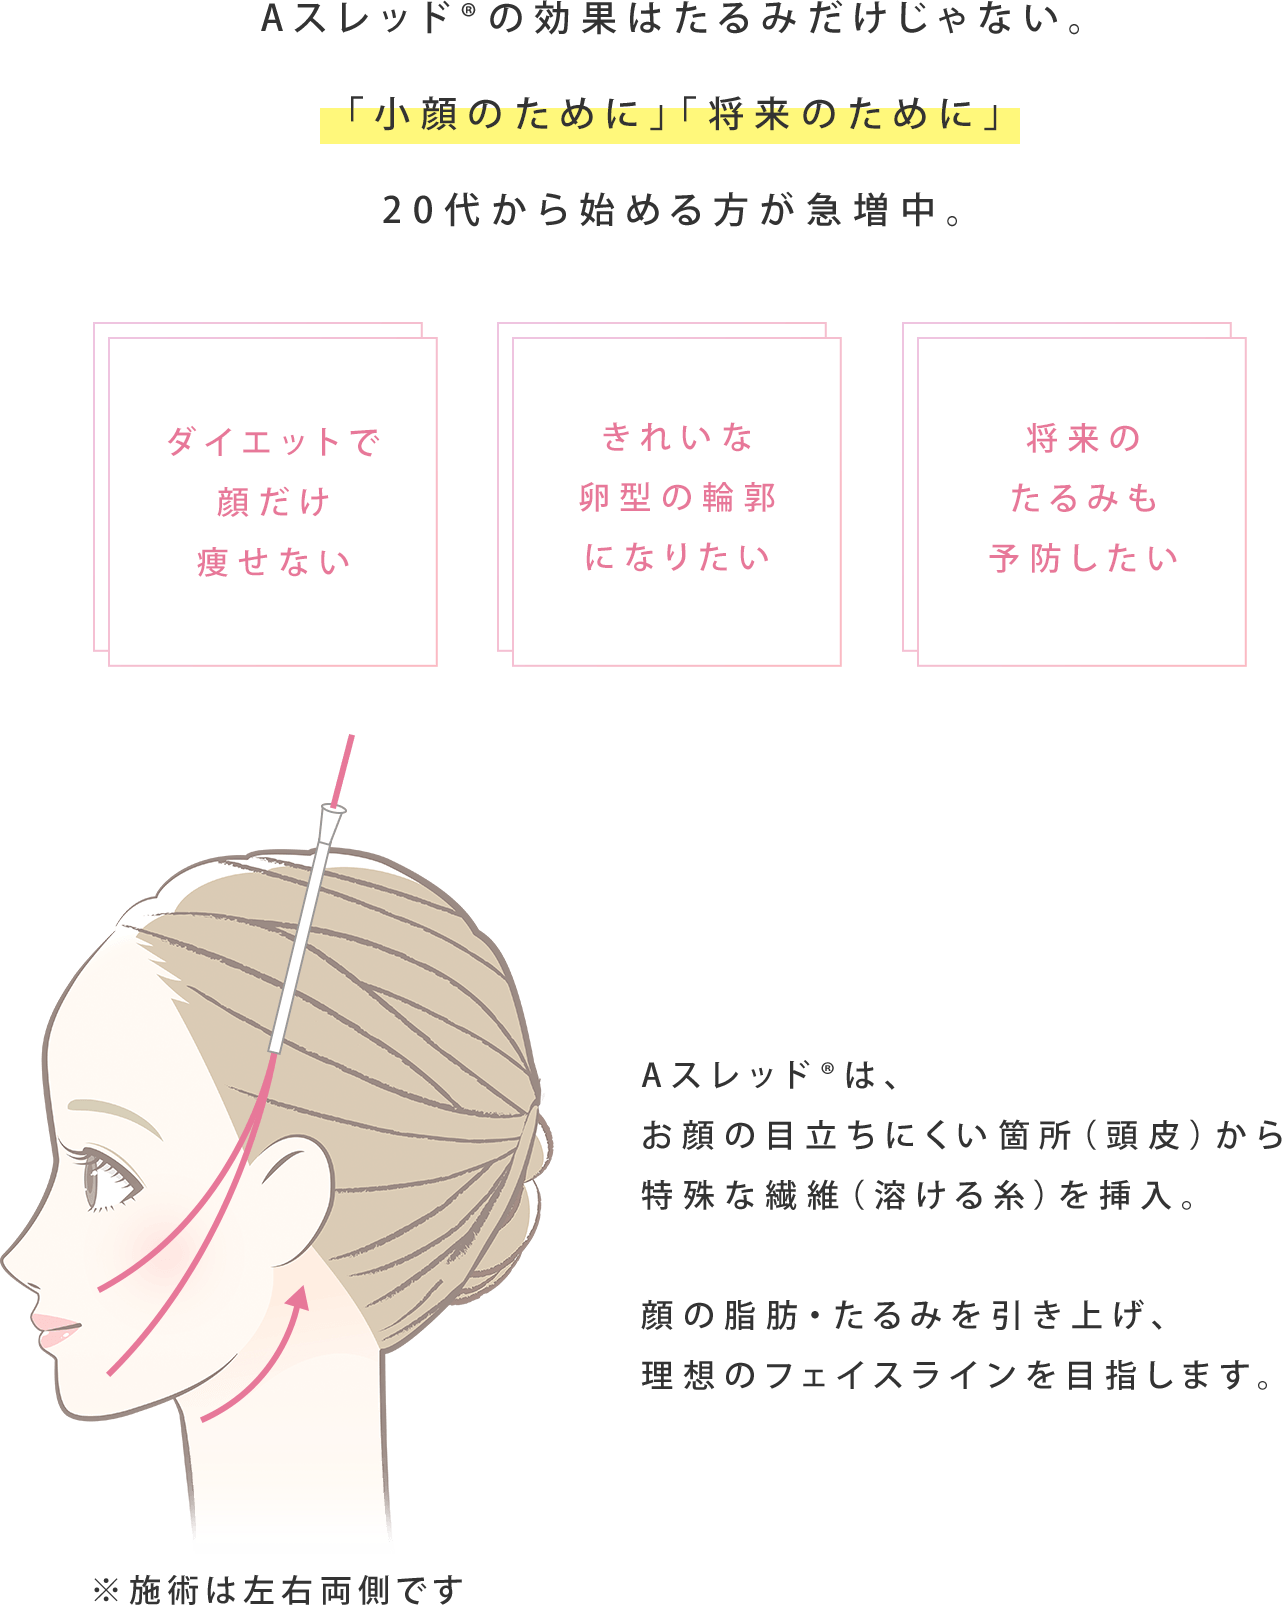 Aスレッド®は、お顔の目立ちにくい箇所（頭皮）から特殊な繊維（溶ける糸）を挿入。顔のたるみを引き上げて輪郭を整え、理想のフェイスラインを目指します。